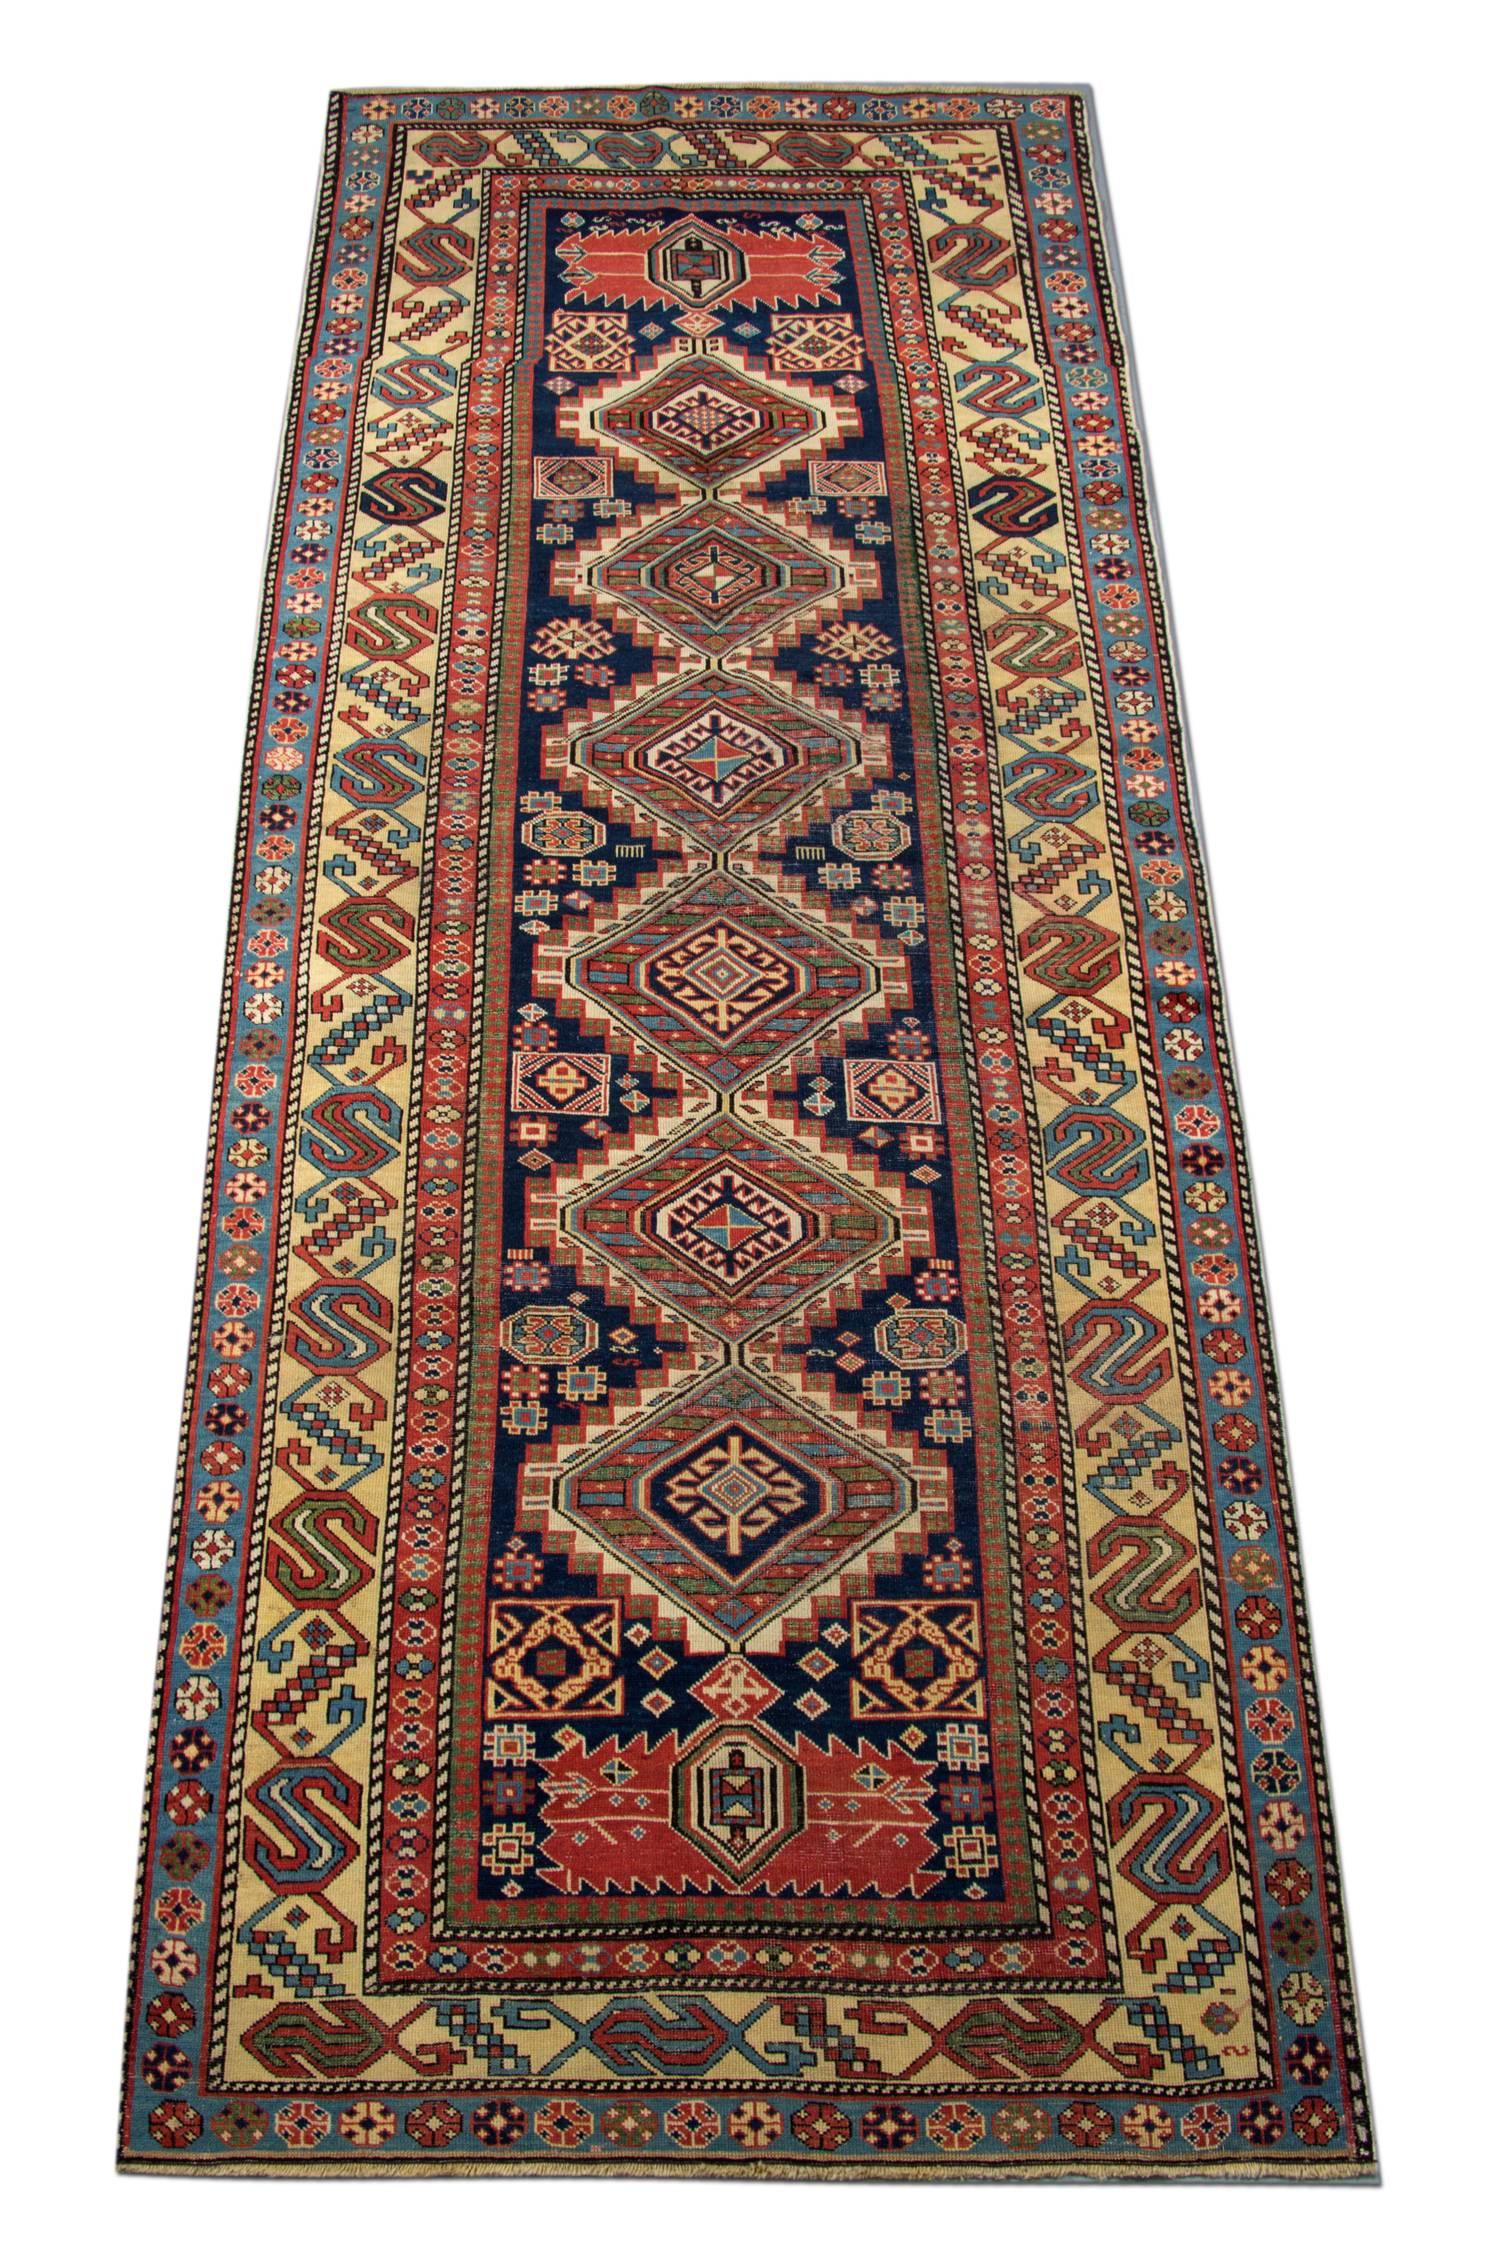 Dieser handgefertigte bunte Teppich ist ein türkischer Teppich, der von sehr geschickten Webern in der Türkei gewebt wurde, die Wolle und Baumwolle von höchster Qualität verwendeten. Der flachgewebte Teppich ist in den Farben hellorange, orange,